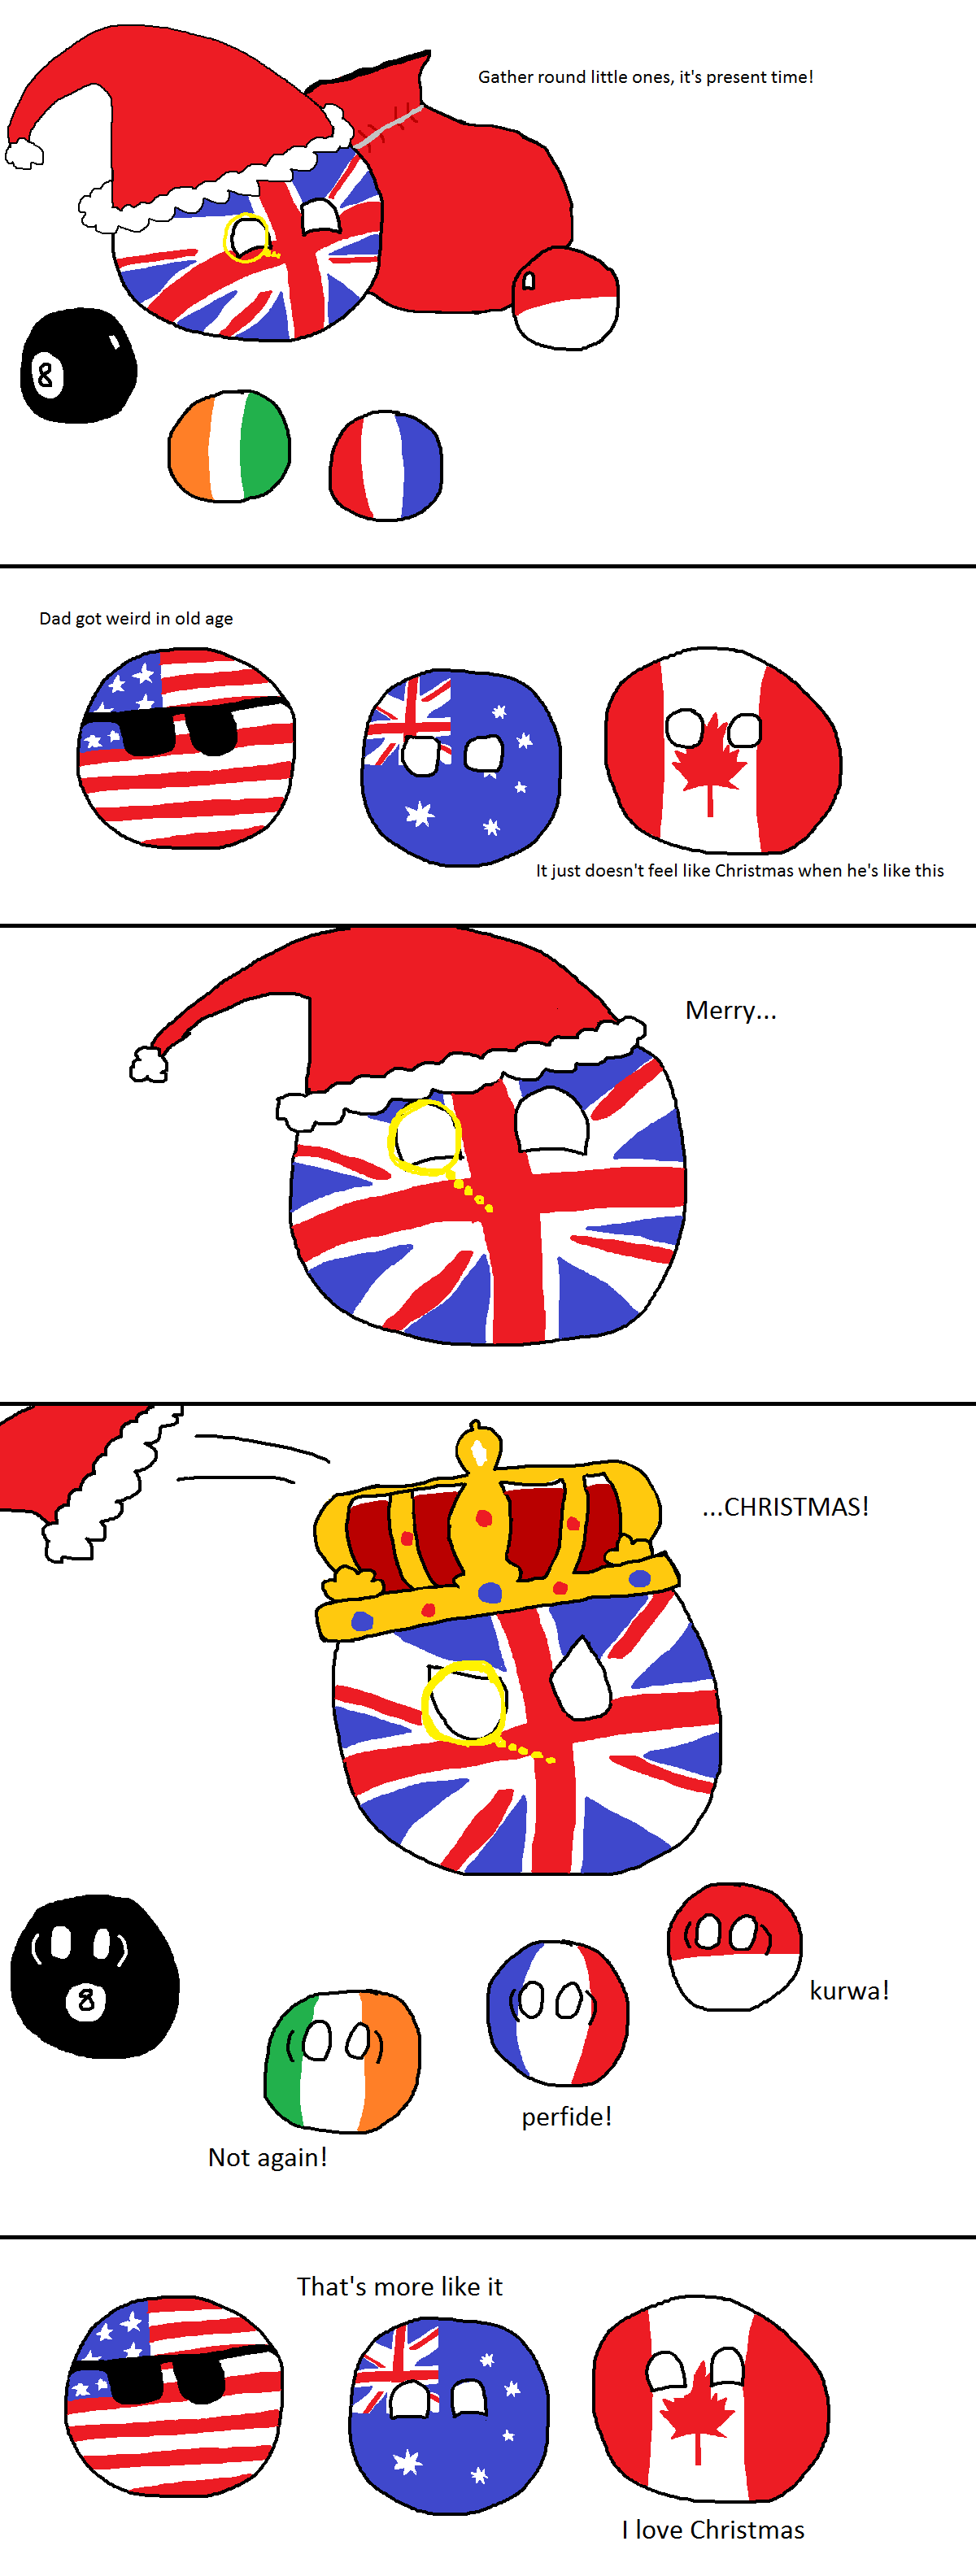 A British kind of Christmas